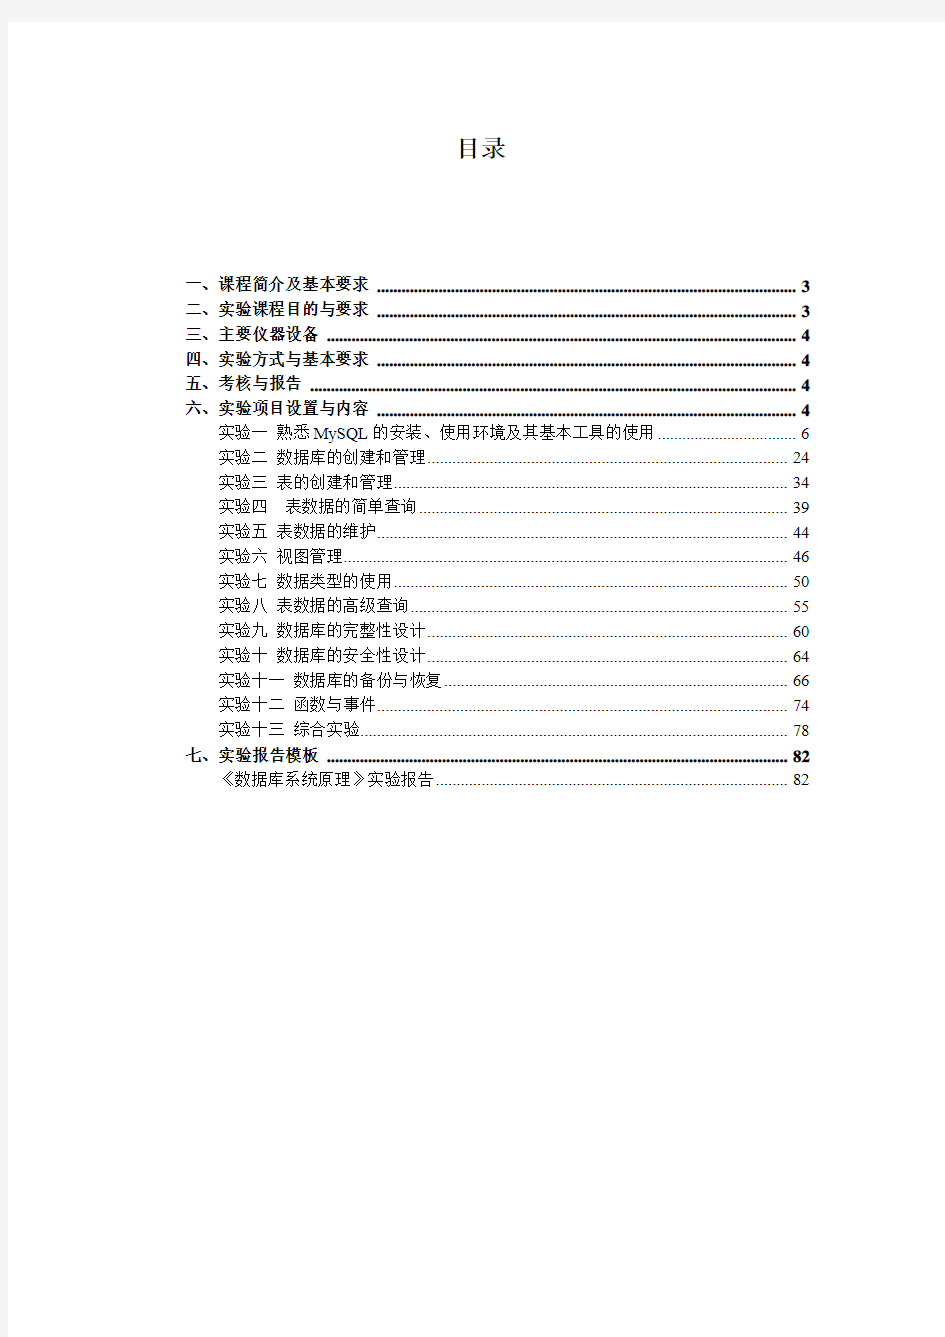 华中科技大学软件学院数据库原理实验指导书 (MySQL 5) V6.0